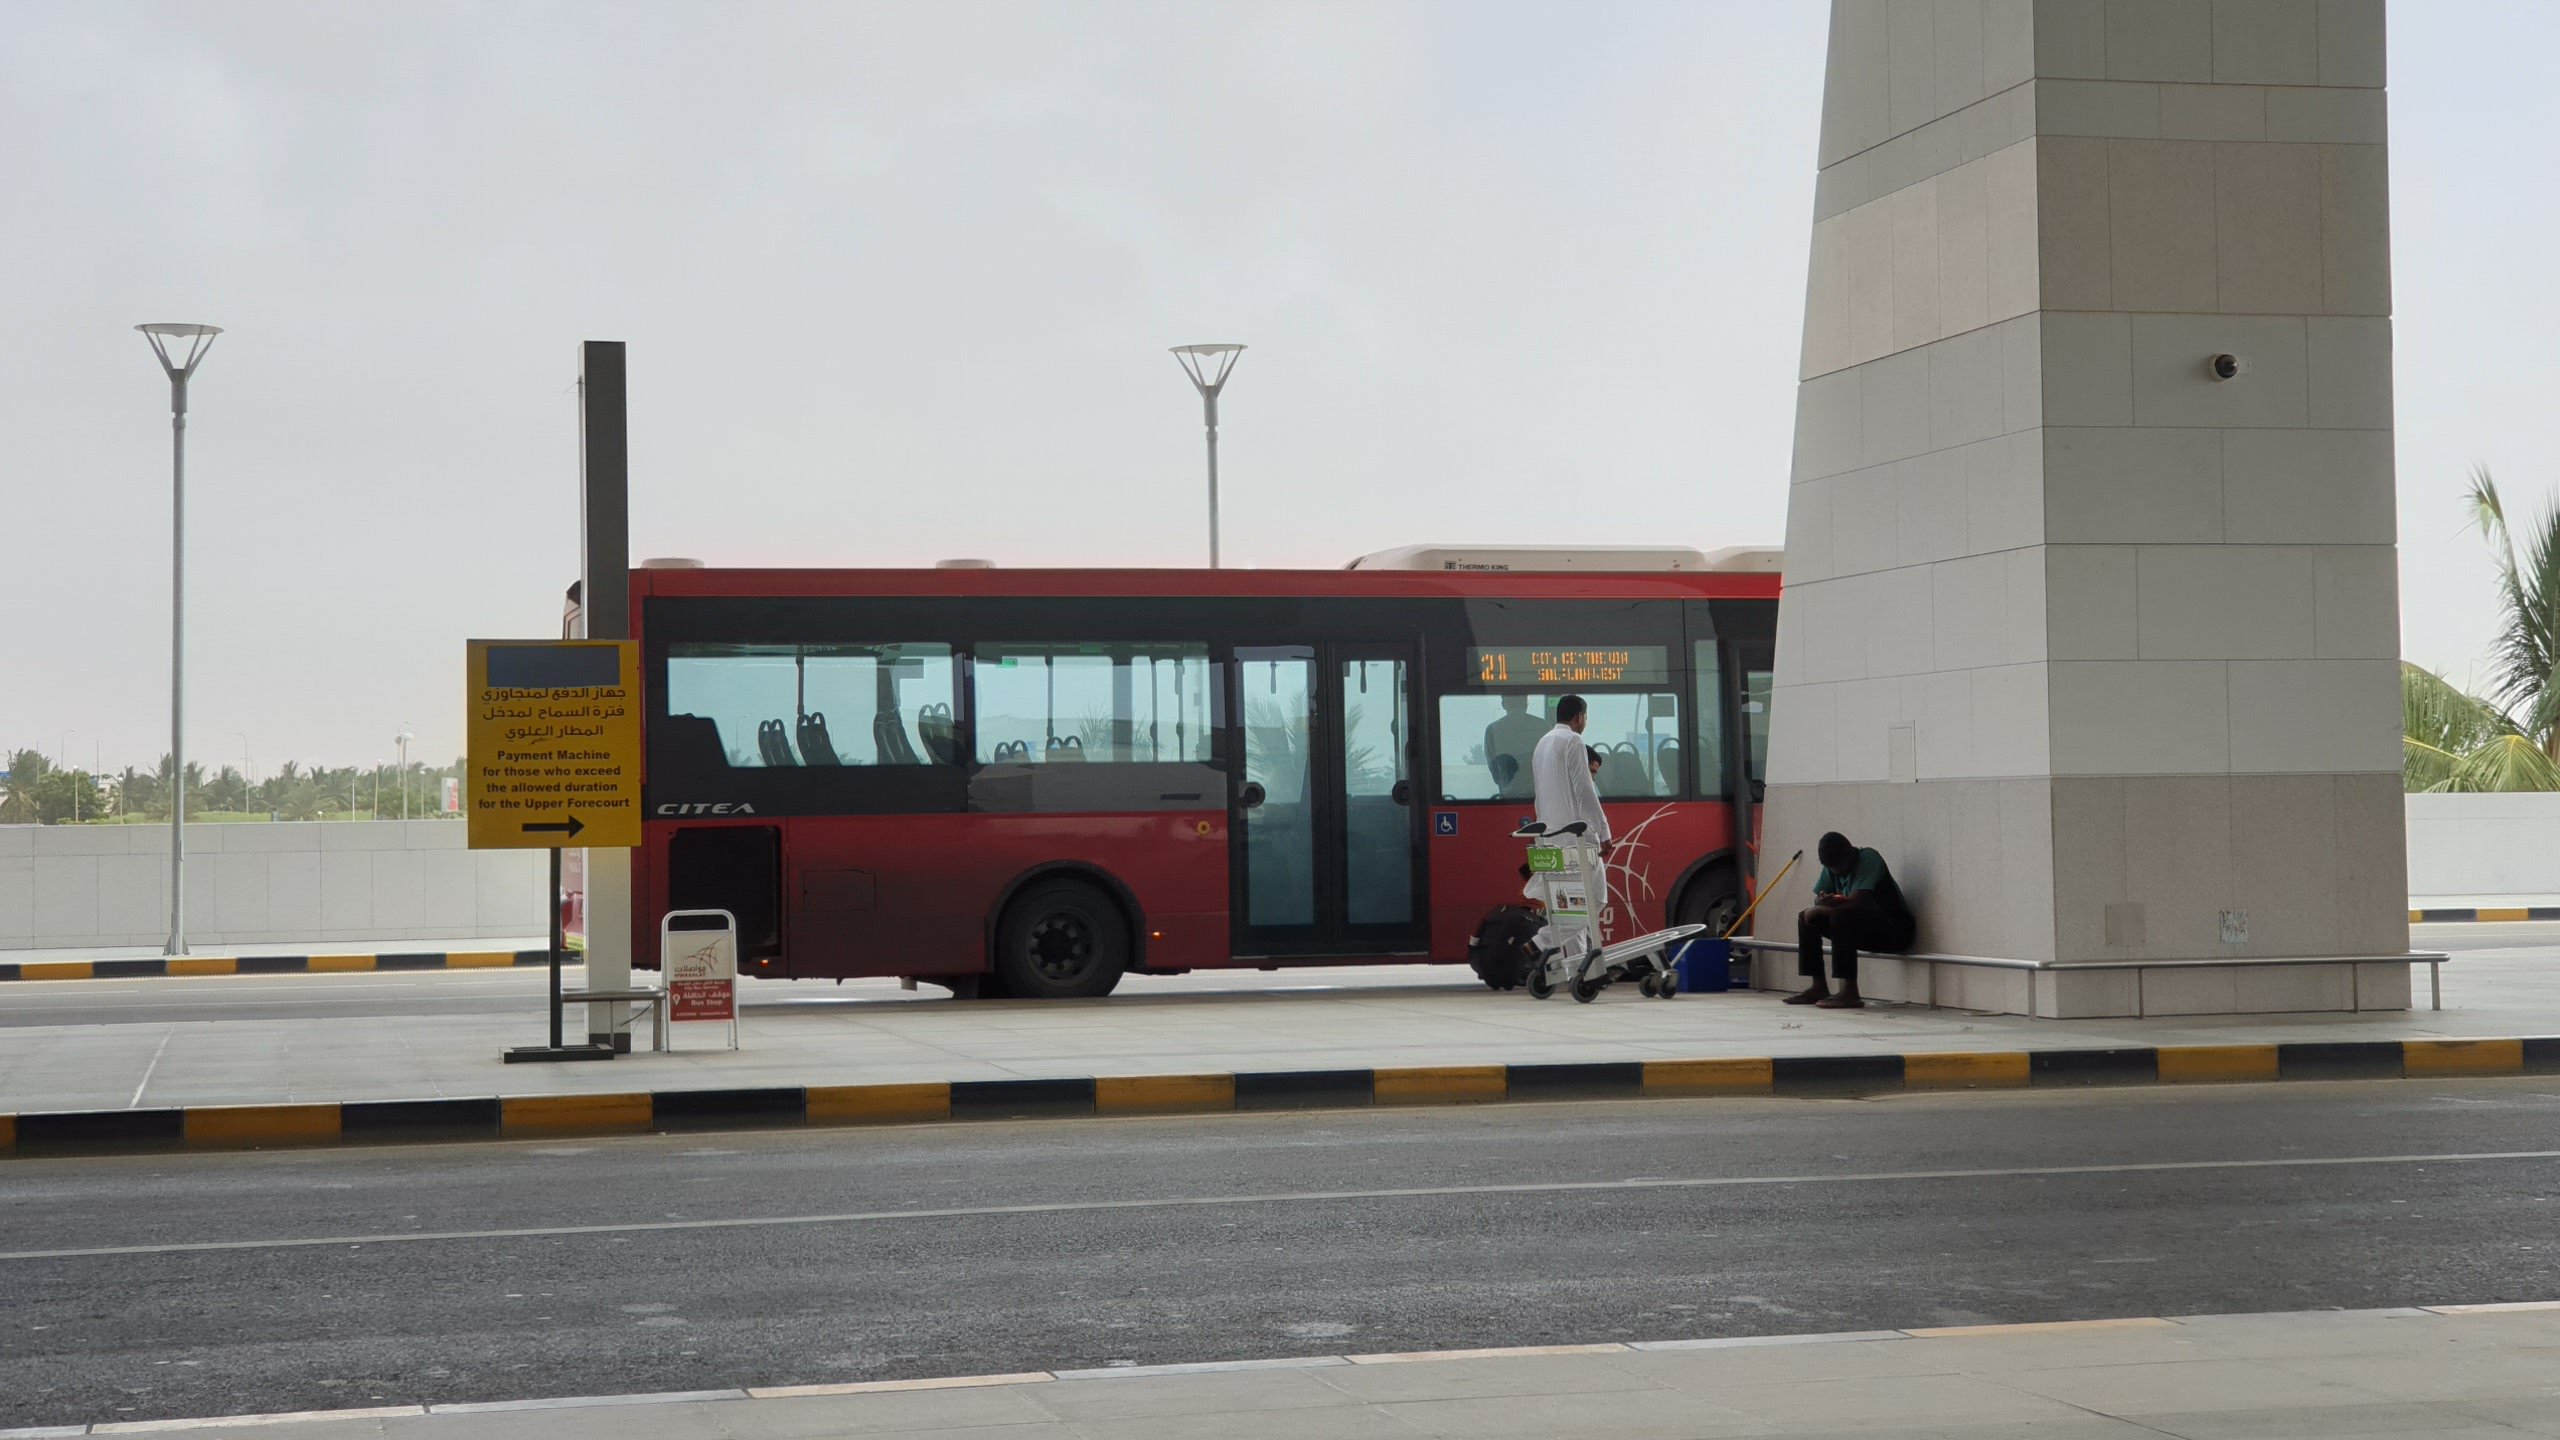 Mwasalat Bus Parked at Salalah Airport Bus Station